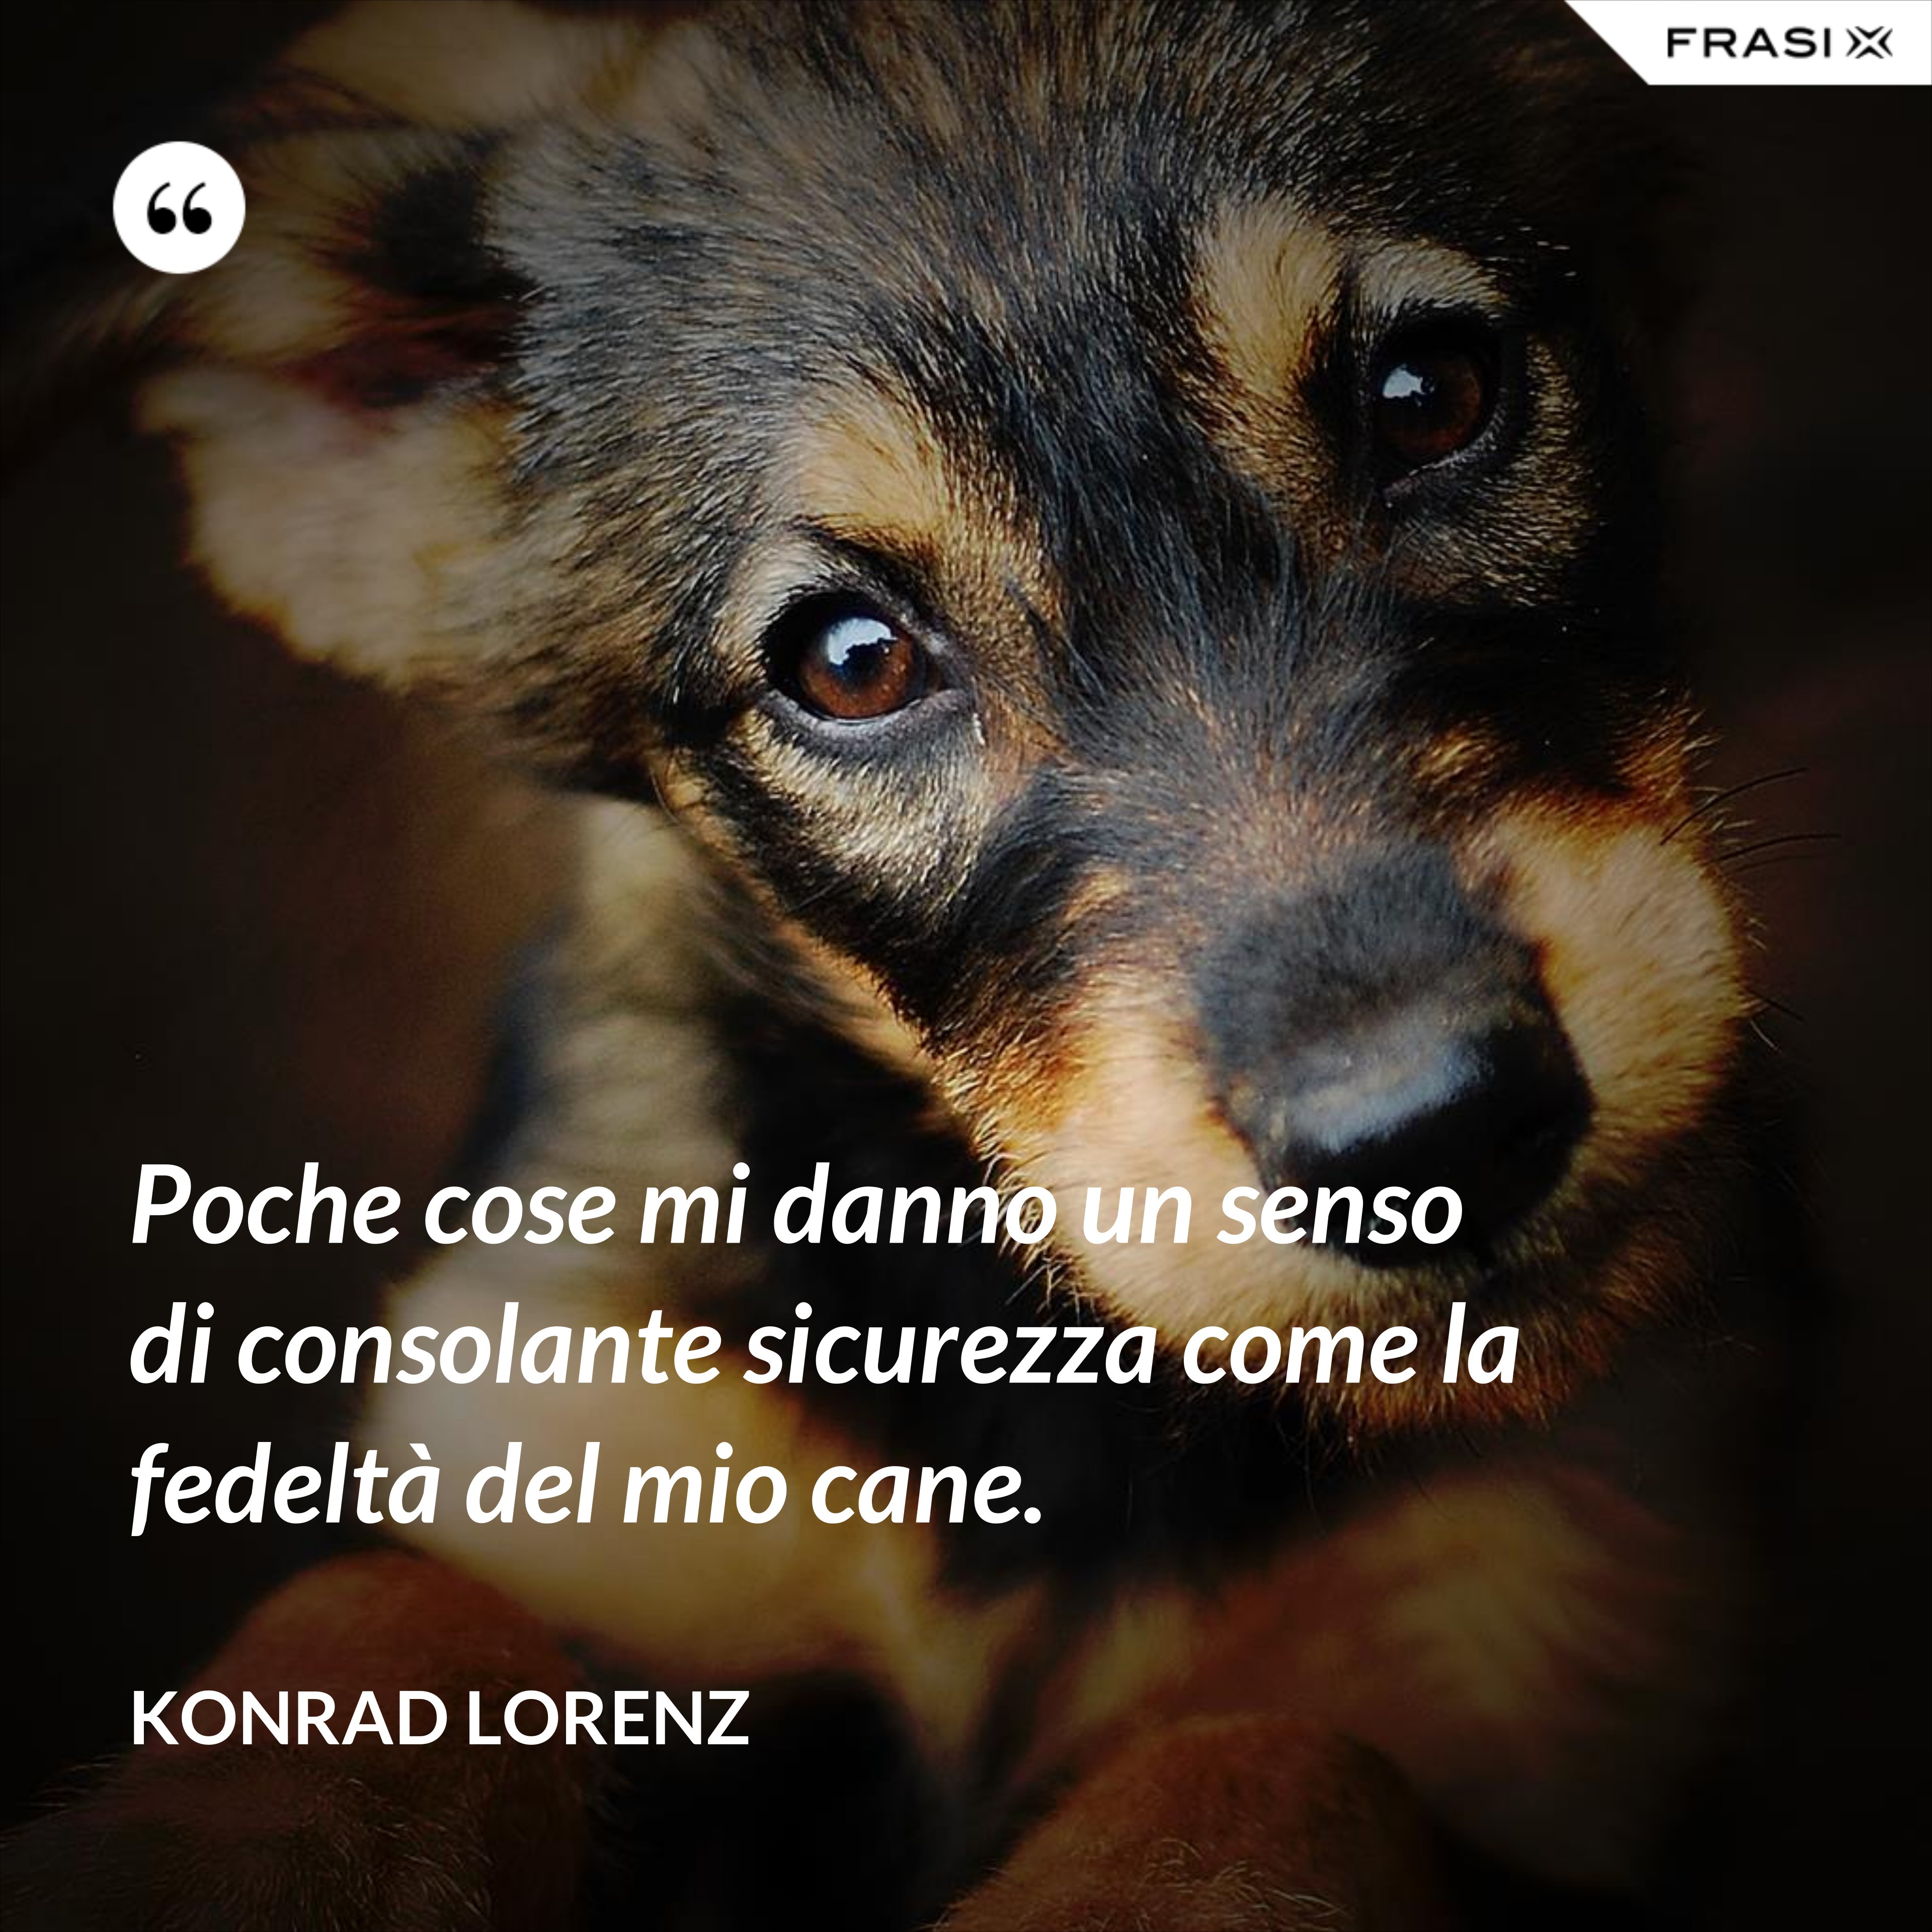 Poche cose mi danno un senso di consolante sicurezza come la fedeltà del mio cane. - Konrad Lorenz